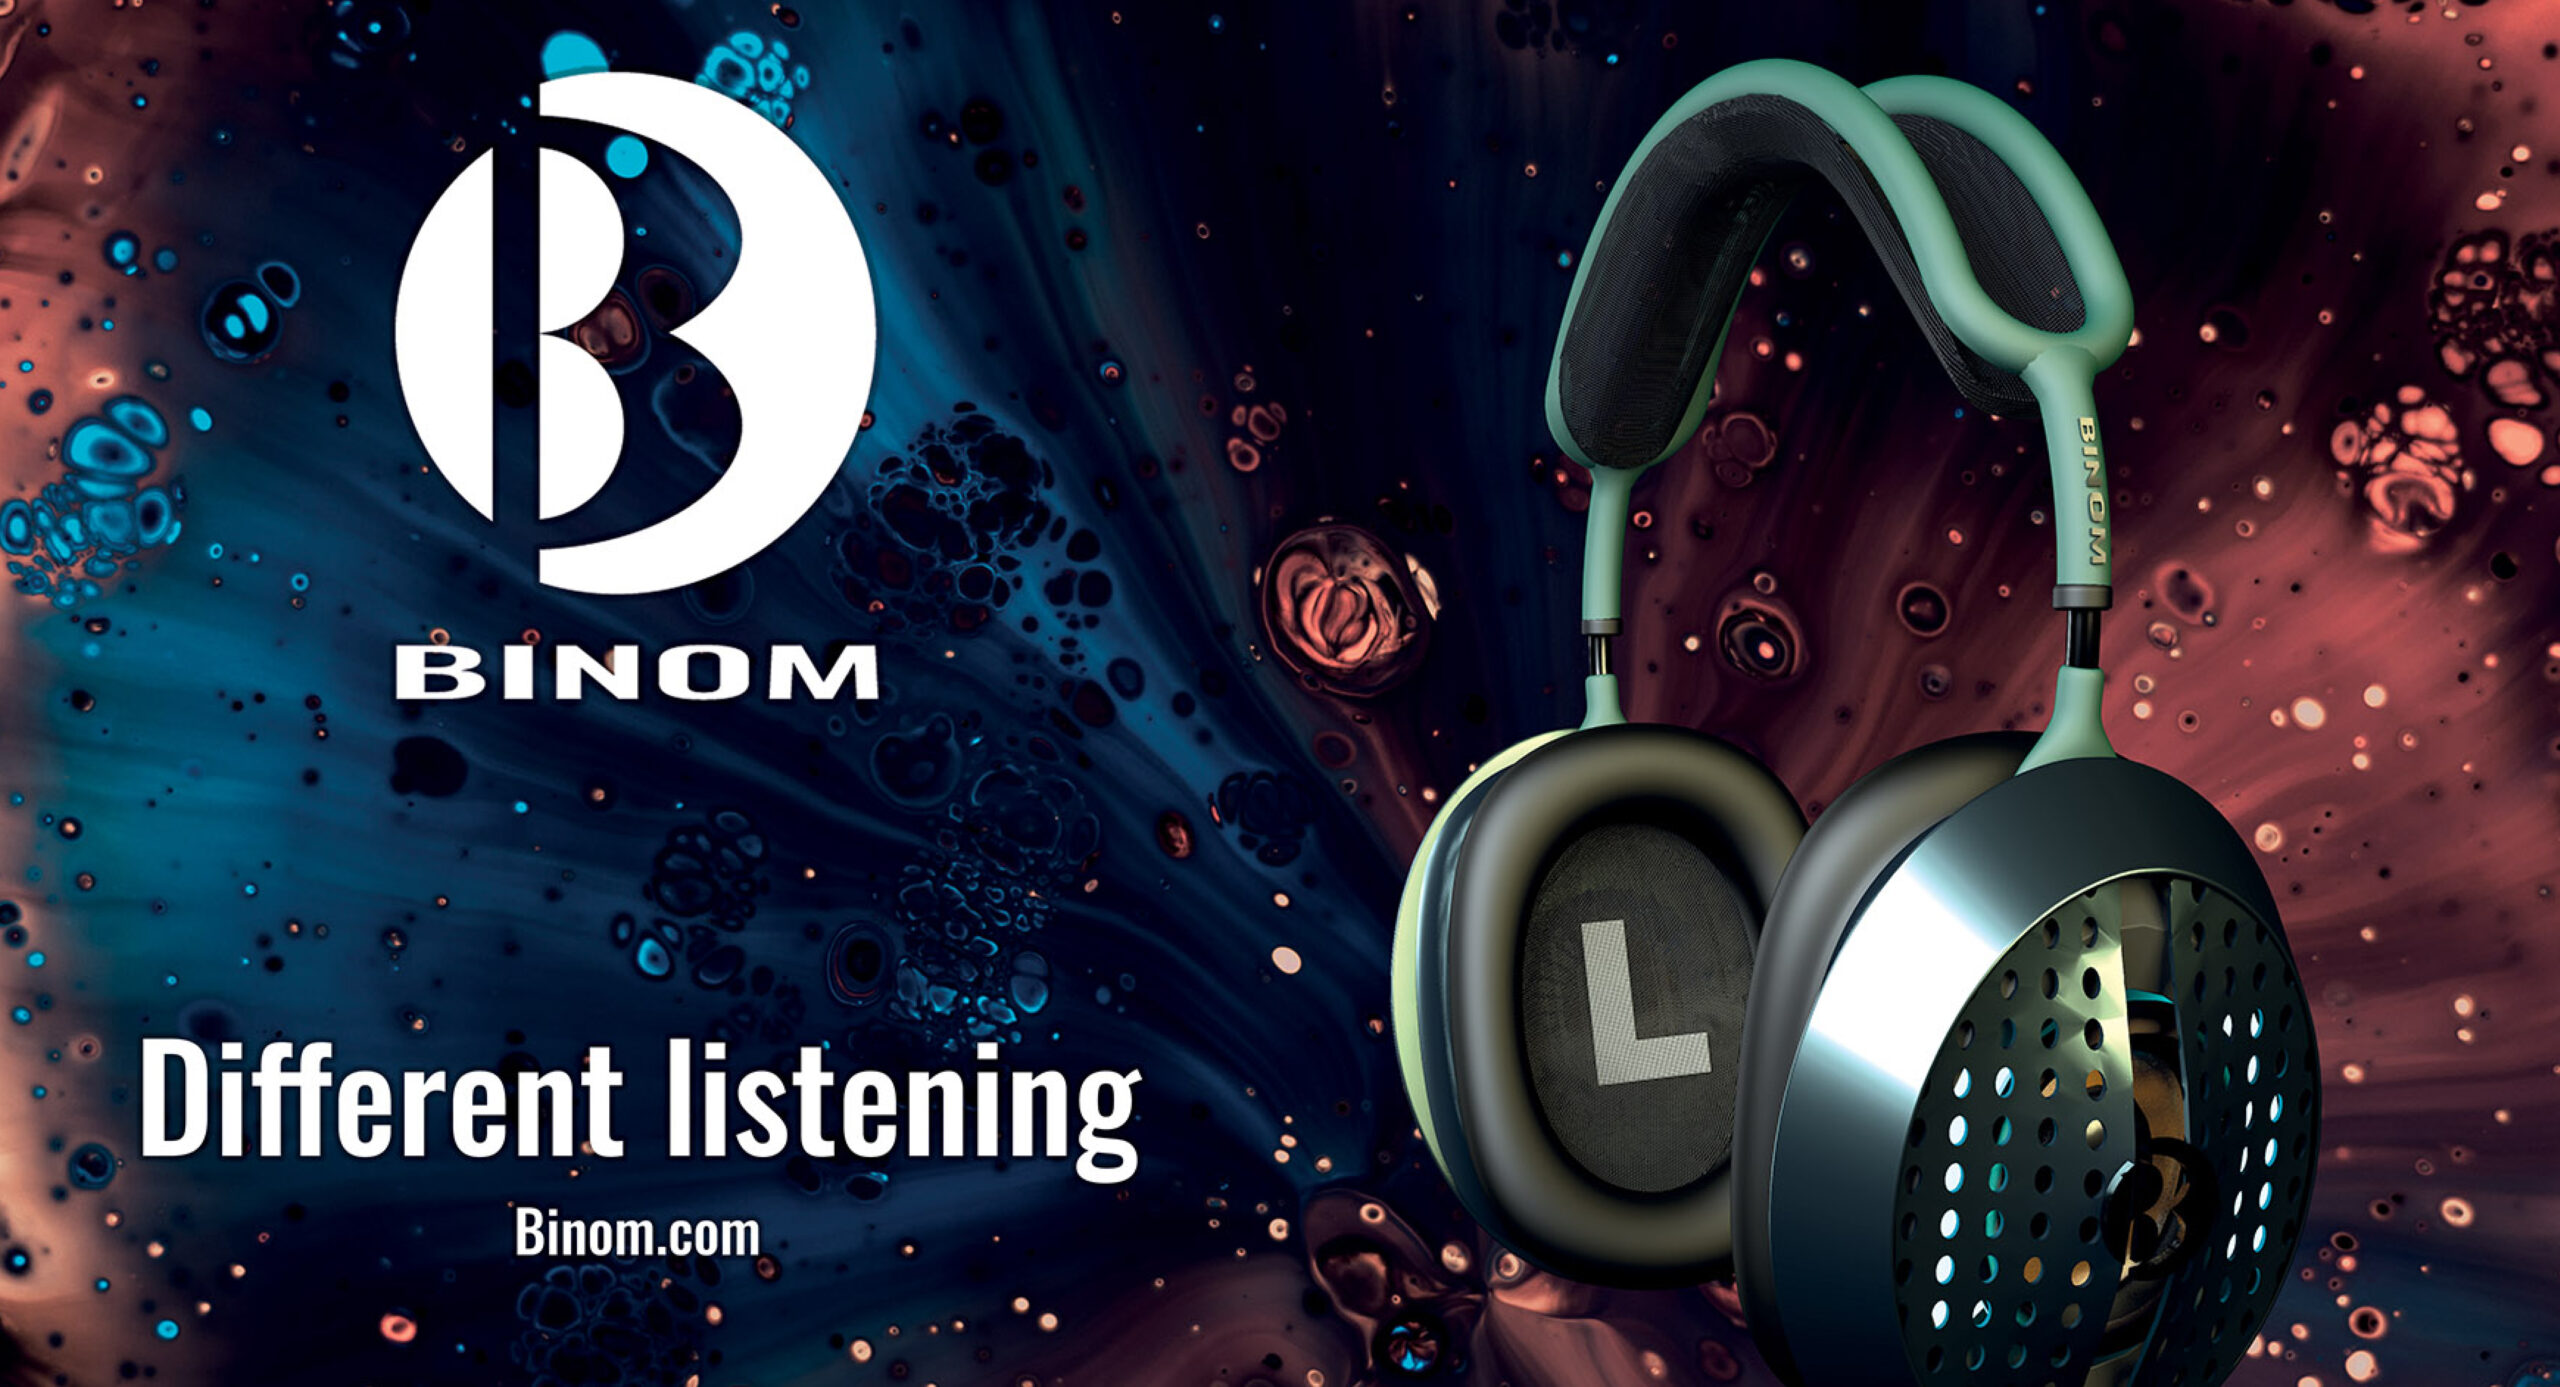 Binom audio branding 360